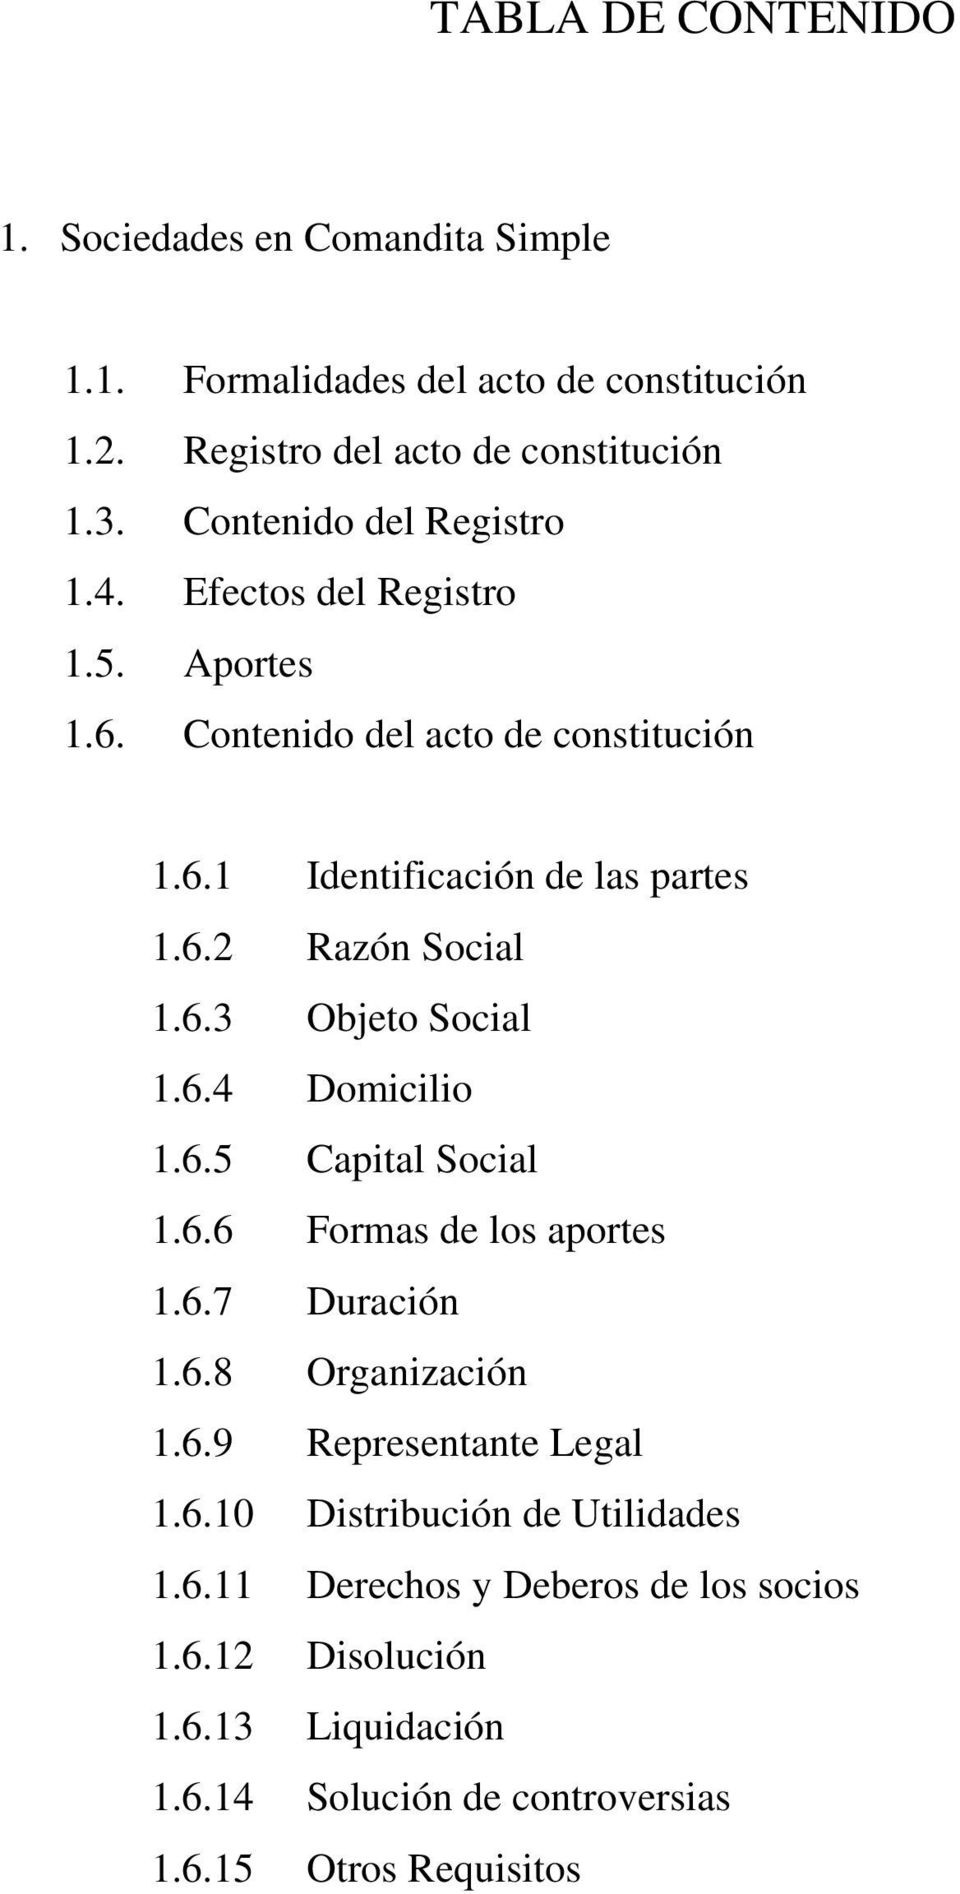 6.3 Objeto Social 1.6.4 Domicilio 1.6.5 Capital Social 1.6.6 Formas de los aportes 1.6.7 Duración 1.6.8 Organización 1.6.9 Representante Legal 1.6.10 Distribución de Utilidades 1.